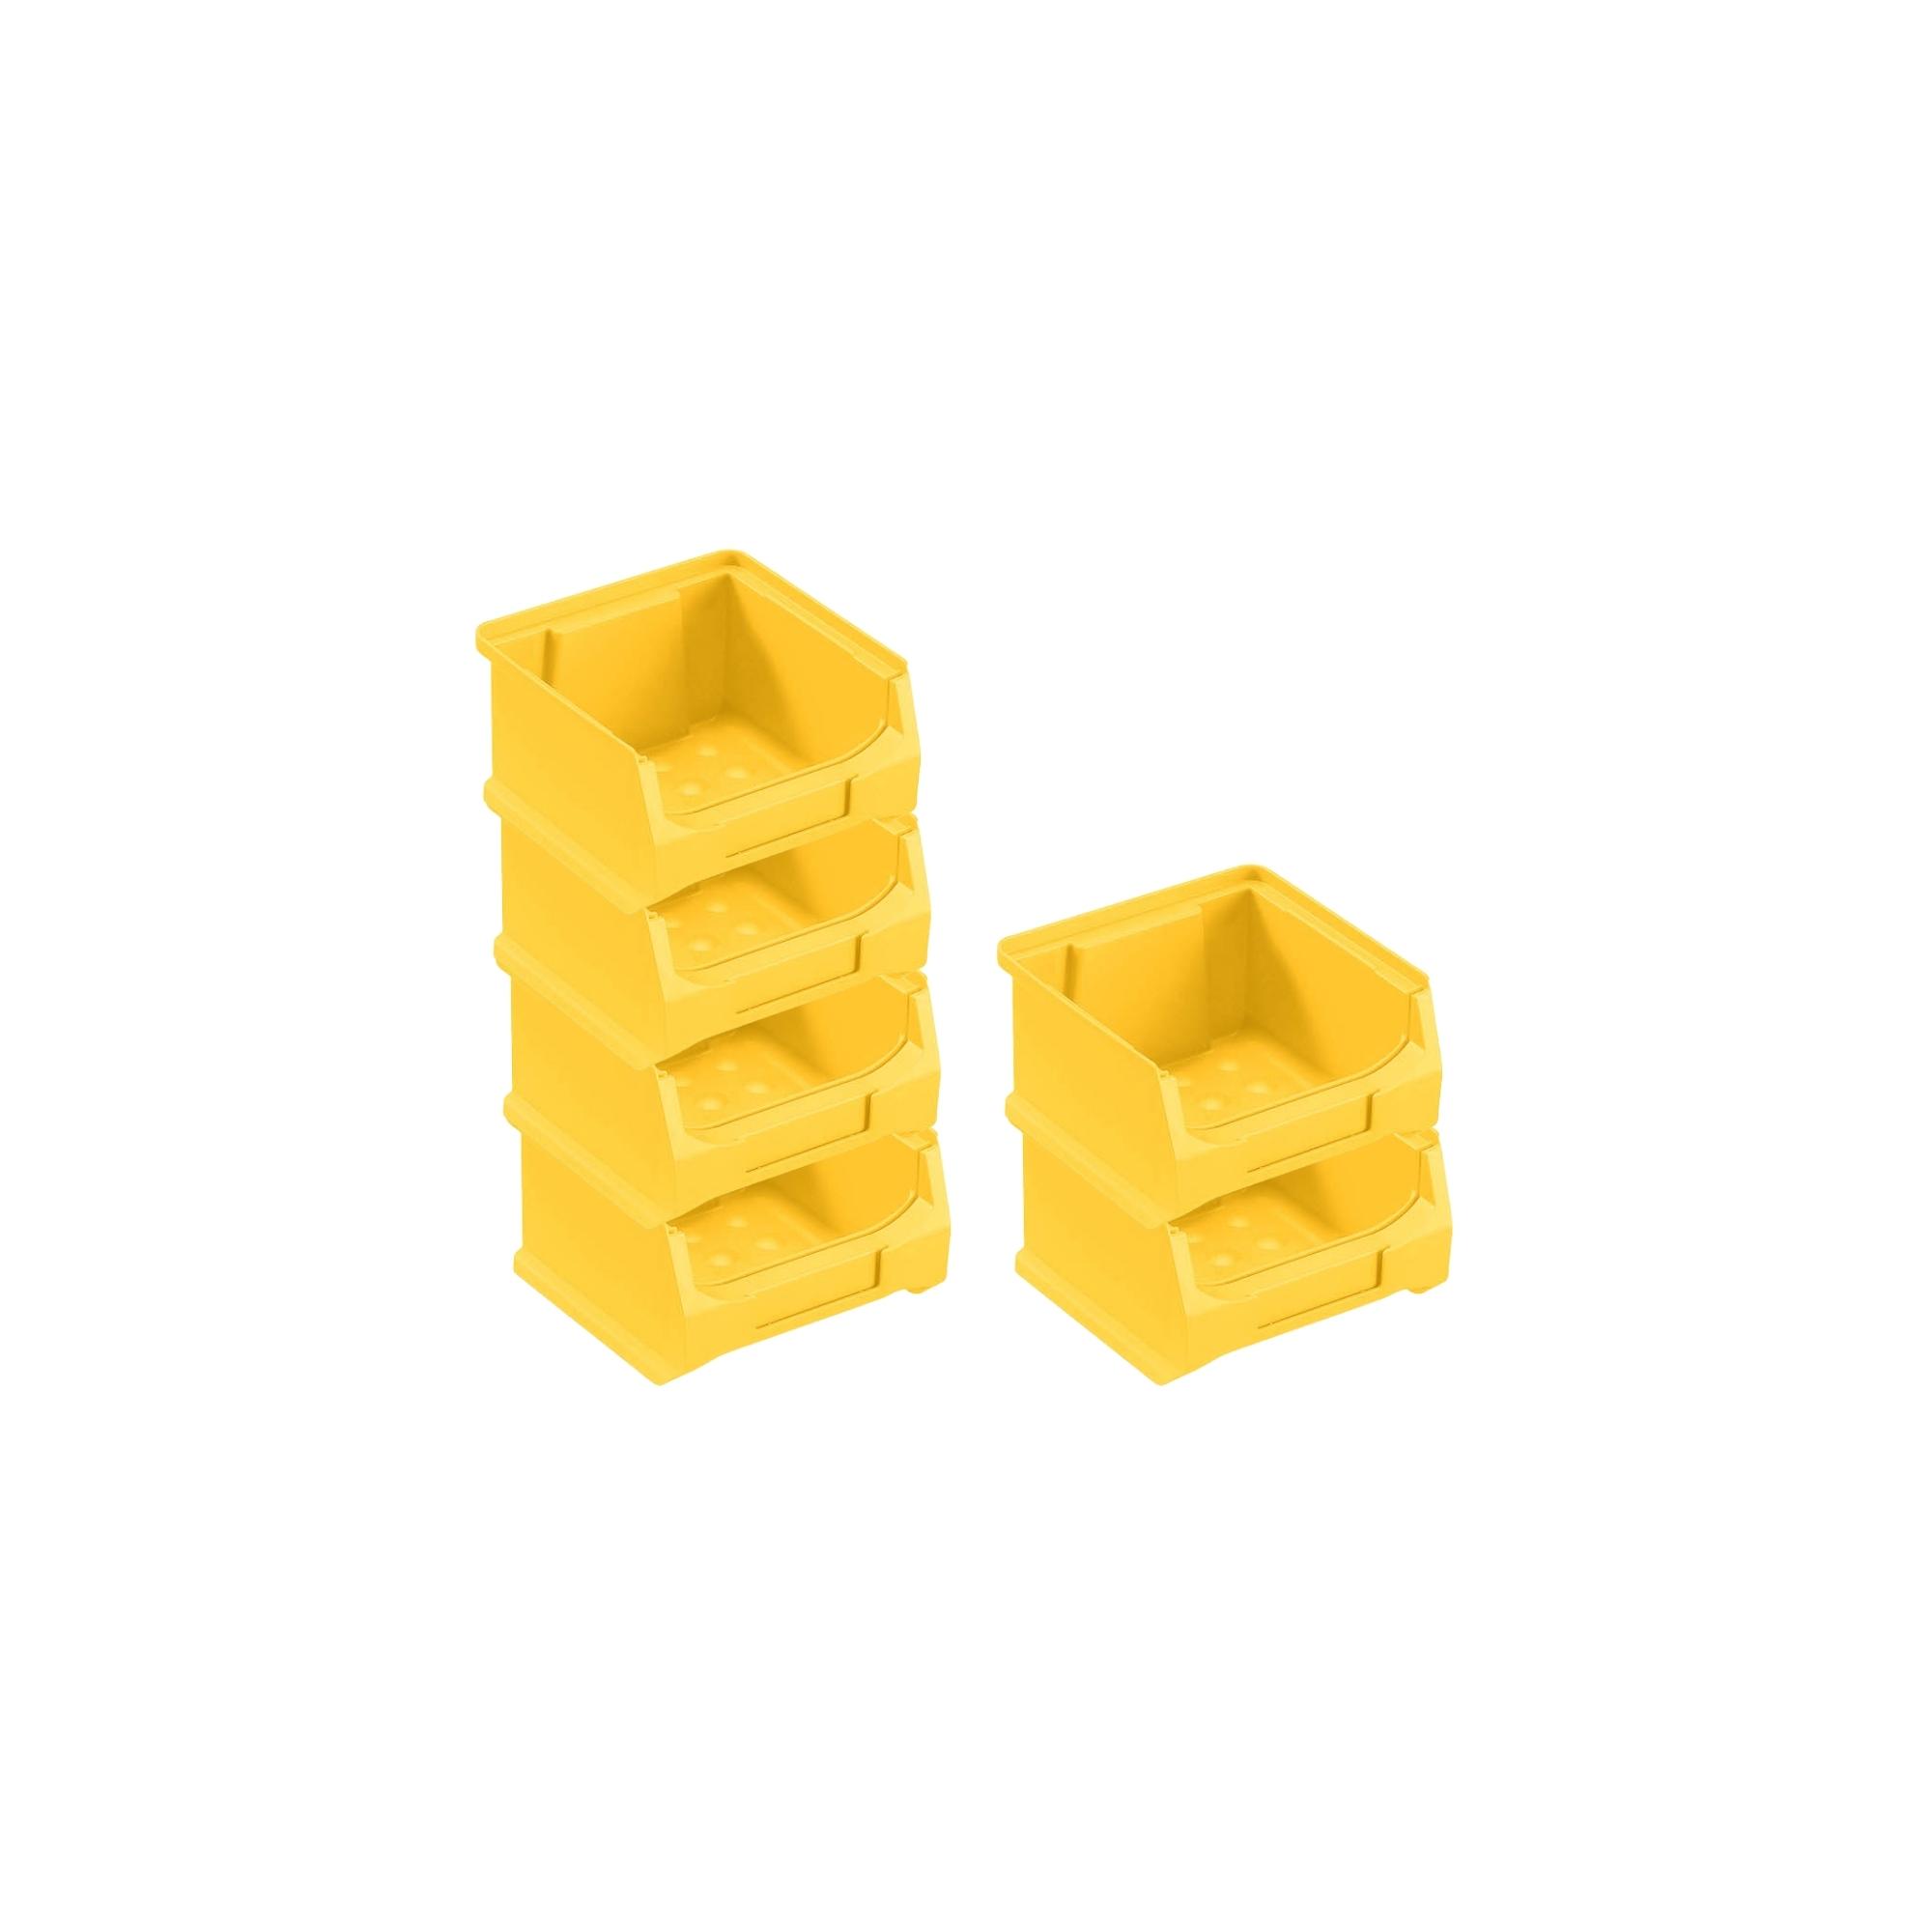 Wandleiste mit 6x Gelbe Sichtlagerbox 1.0 mit Abdeckung | HxBxT 6,1x60,5x10cm | Wandhalterung, Kleinteileaufbewahrung, Sortimentsboxhalterung